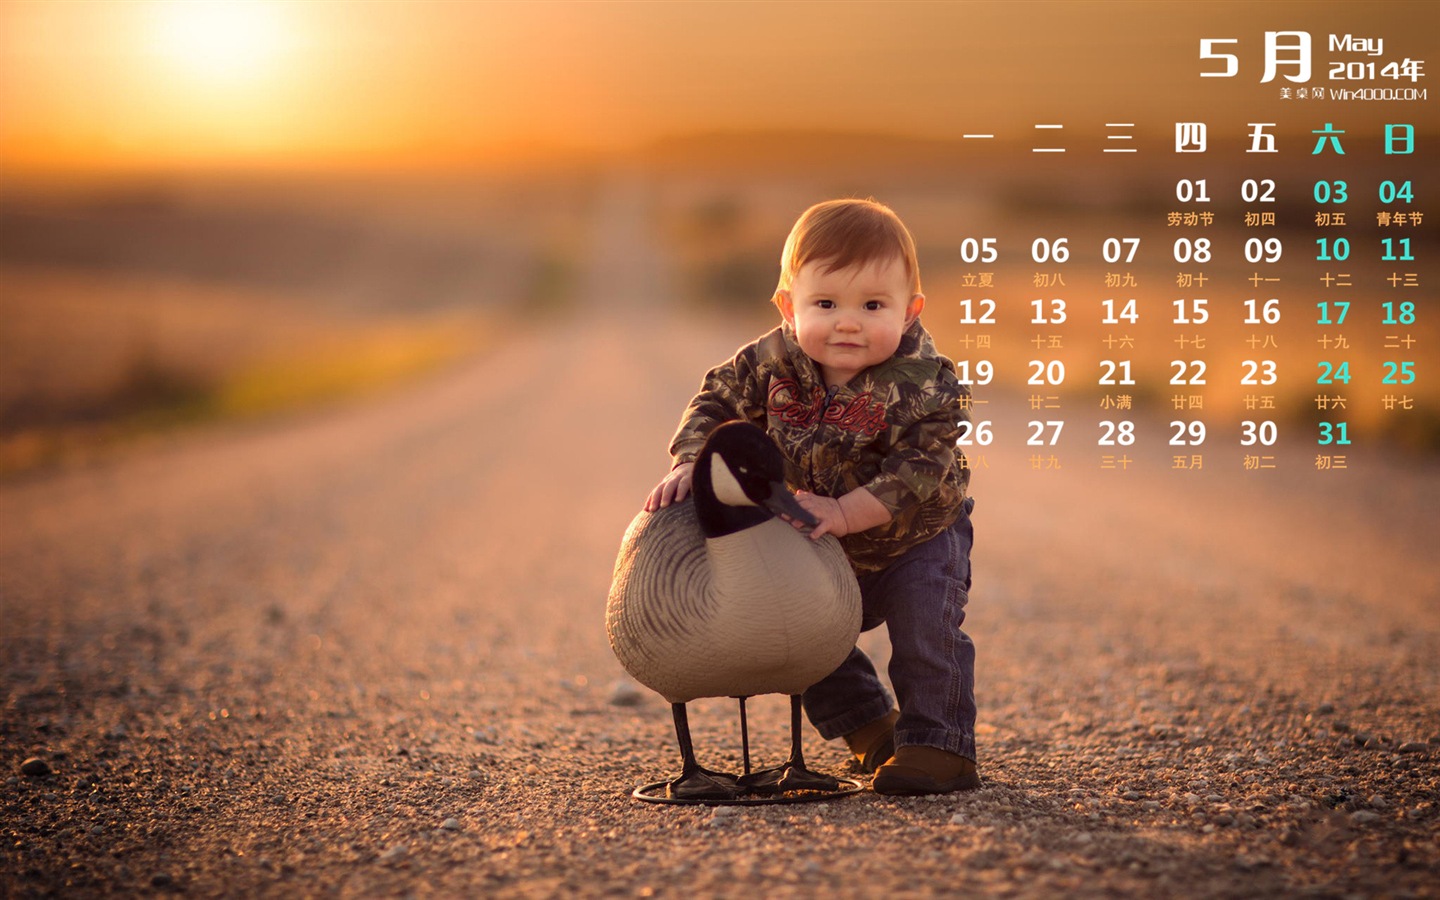 05. 2014 Kalendář tapety (1) #11 - 1440x900